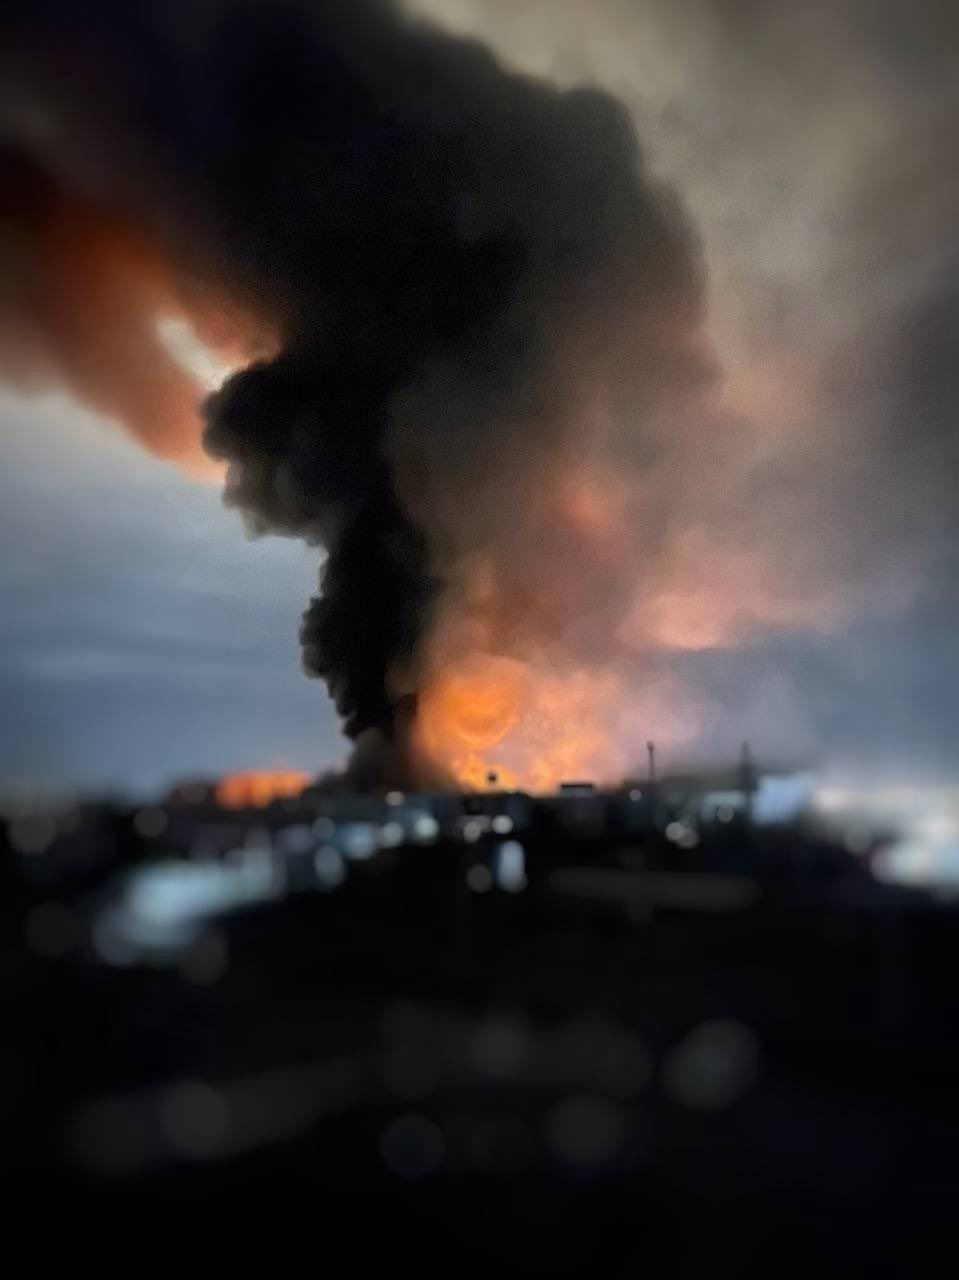 Wojna w Ukrainie. Rosjanie bombardują Odessę. Duży pożar w mieście [RELACJA NA ŻYWO]